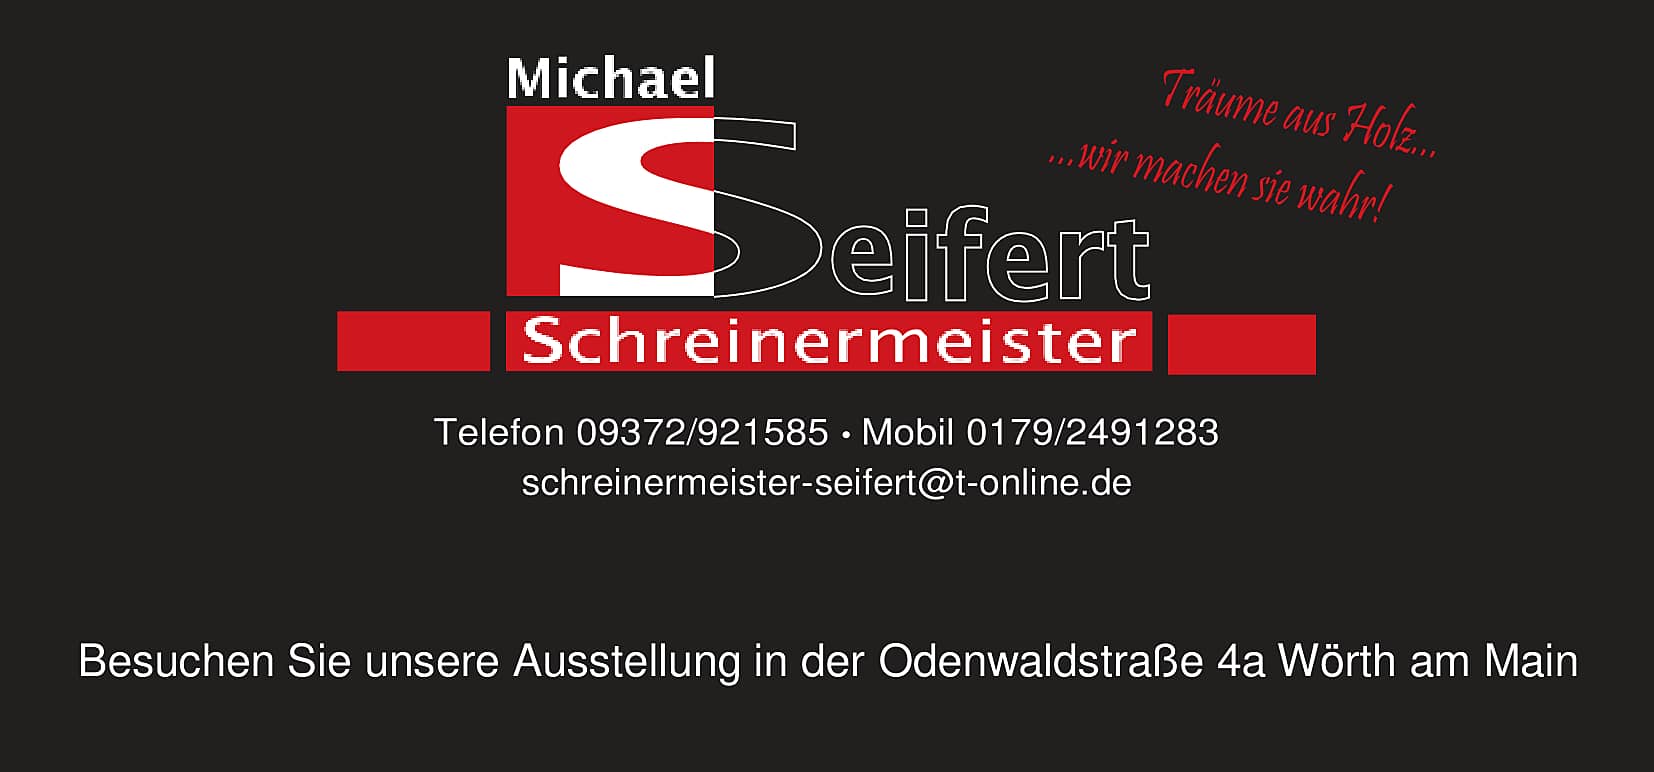 Schreinermeister Michael Seifert